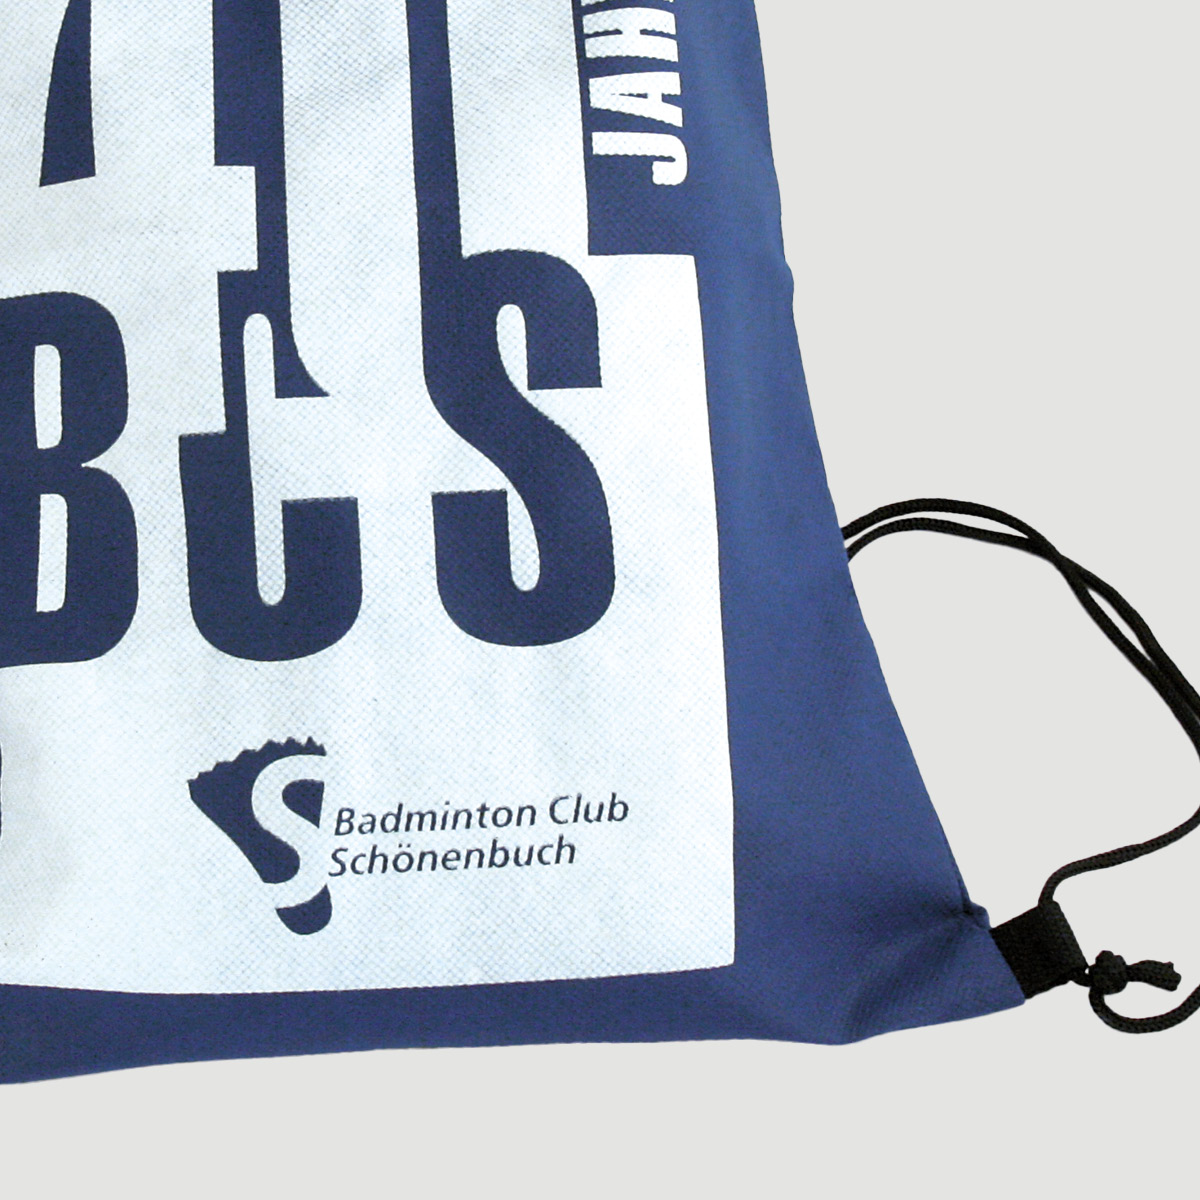 Badminton-Club Schönenbuch